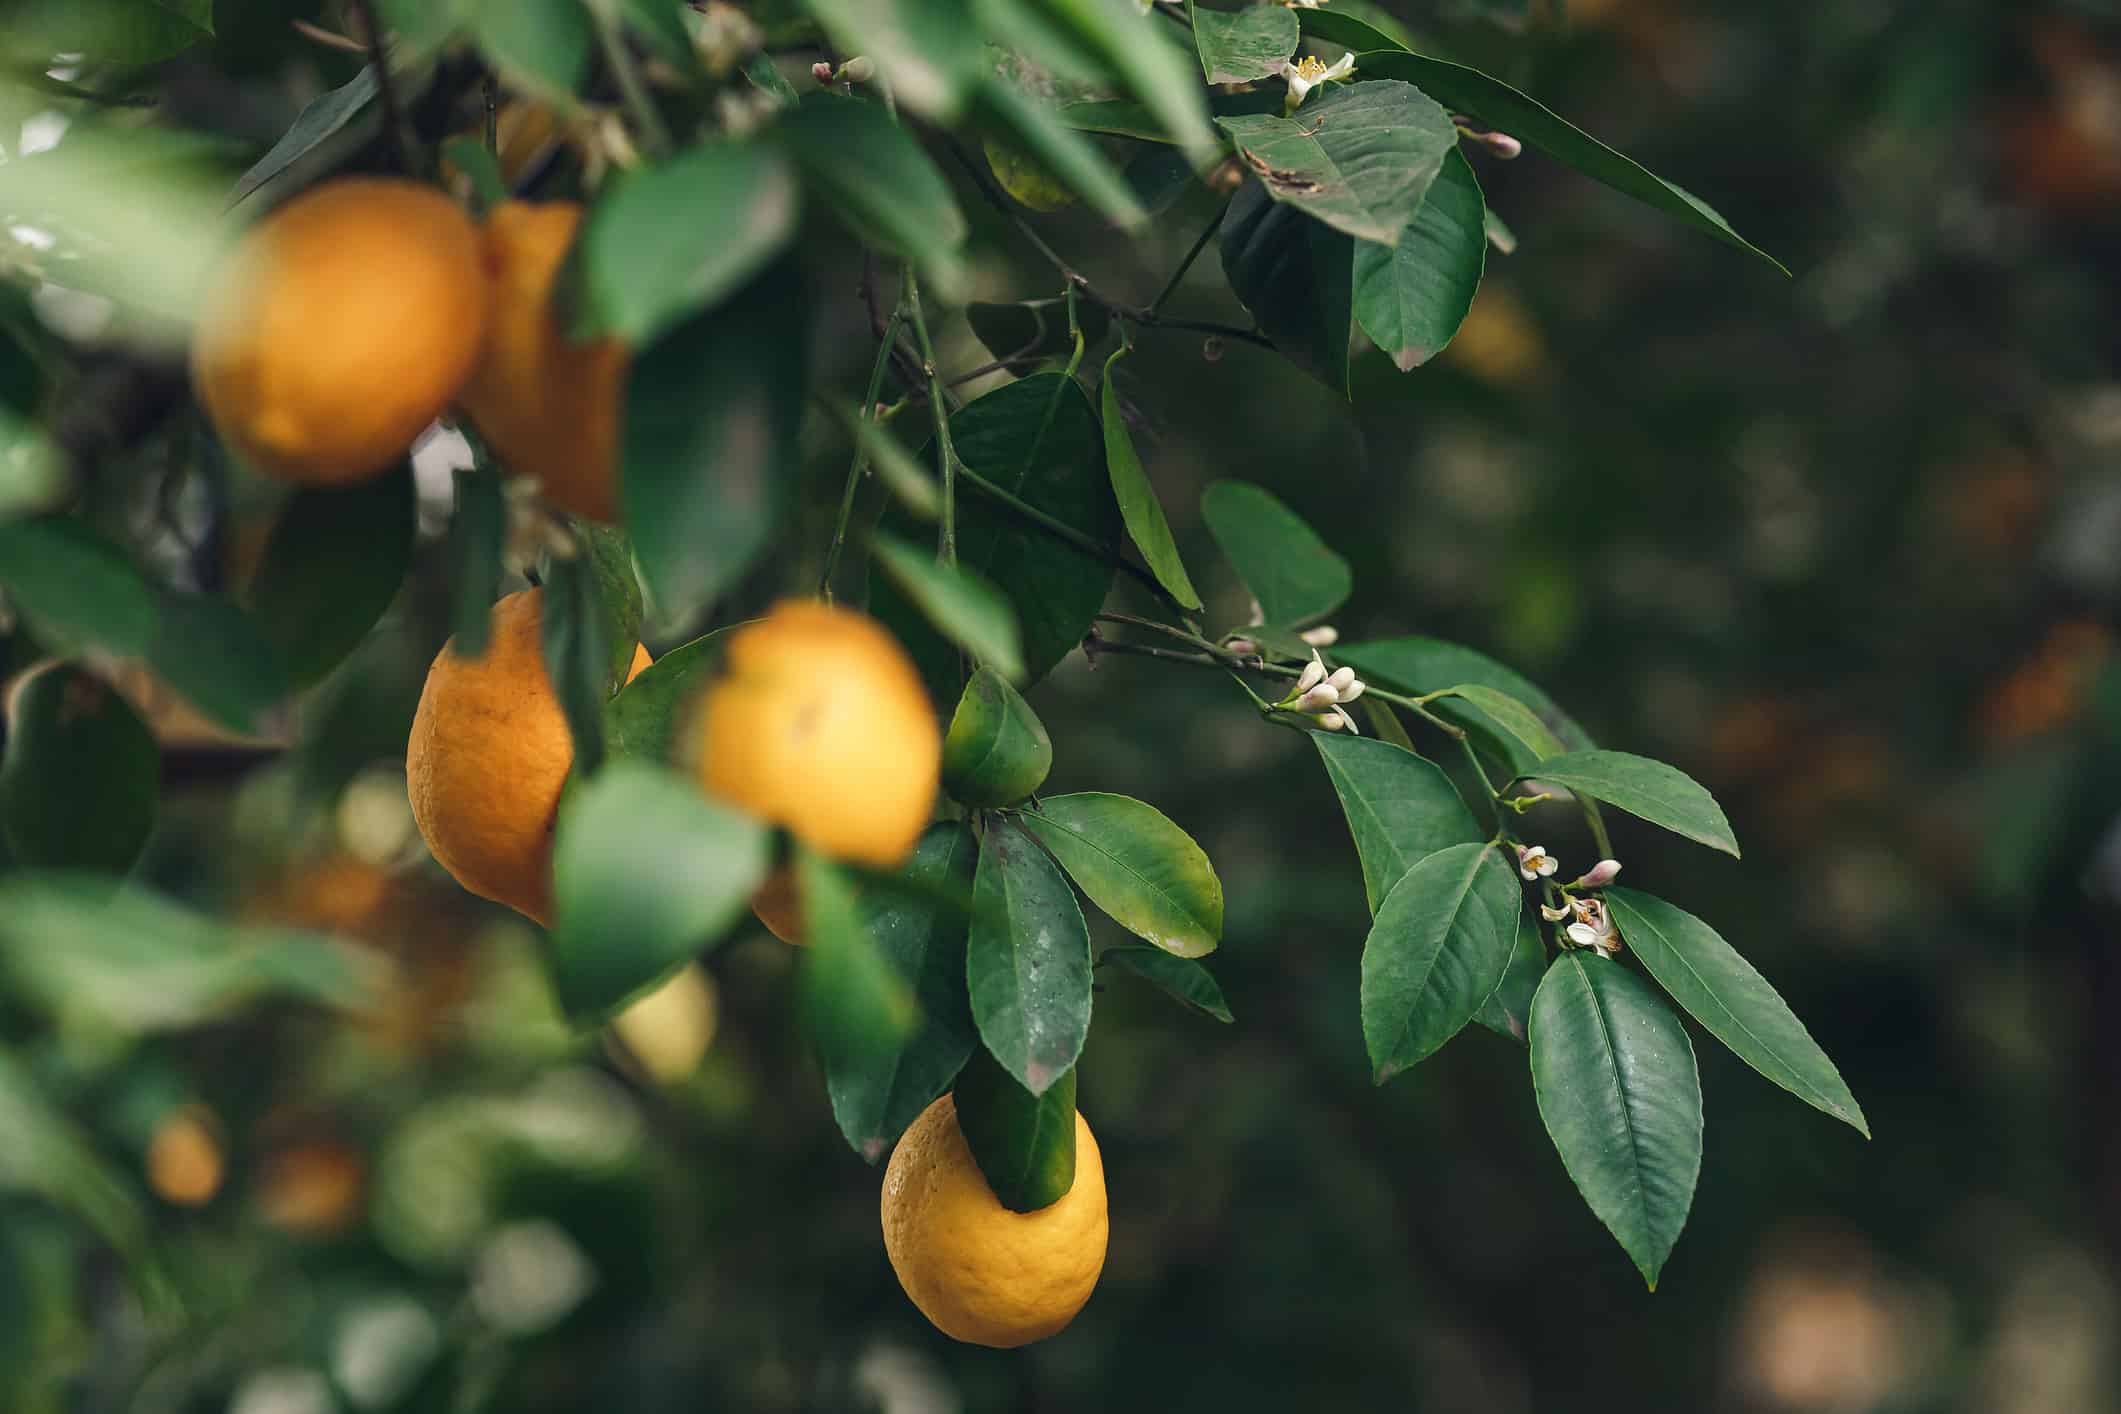 limoni Meyer gialli-arancio maturi su un albero di limone con foglie verde intenso.